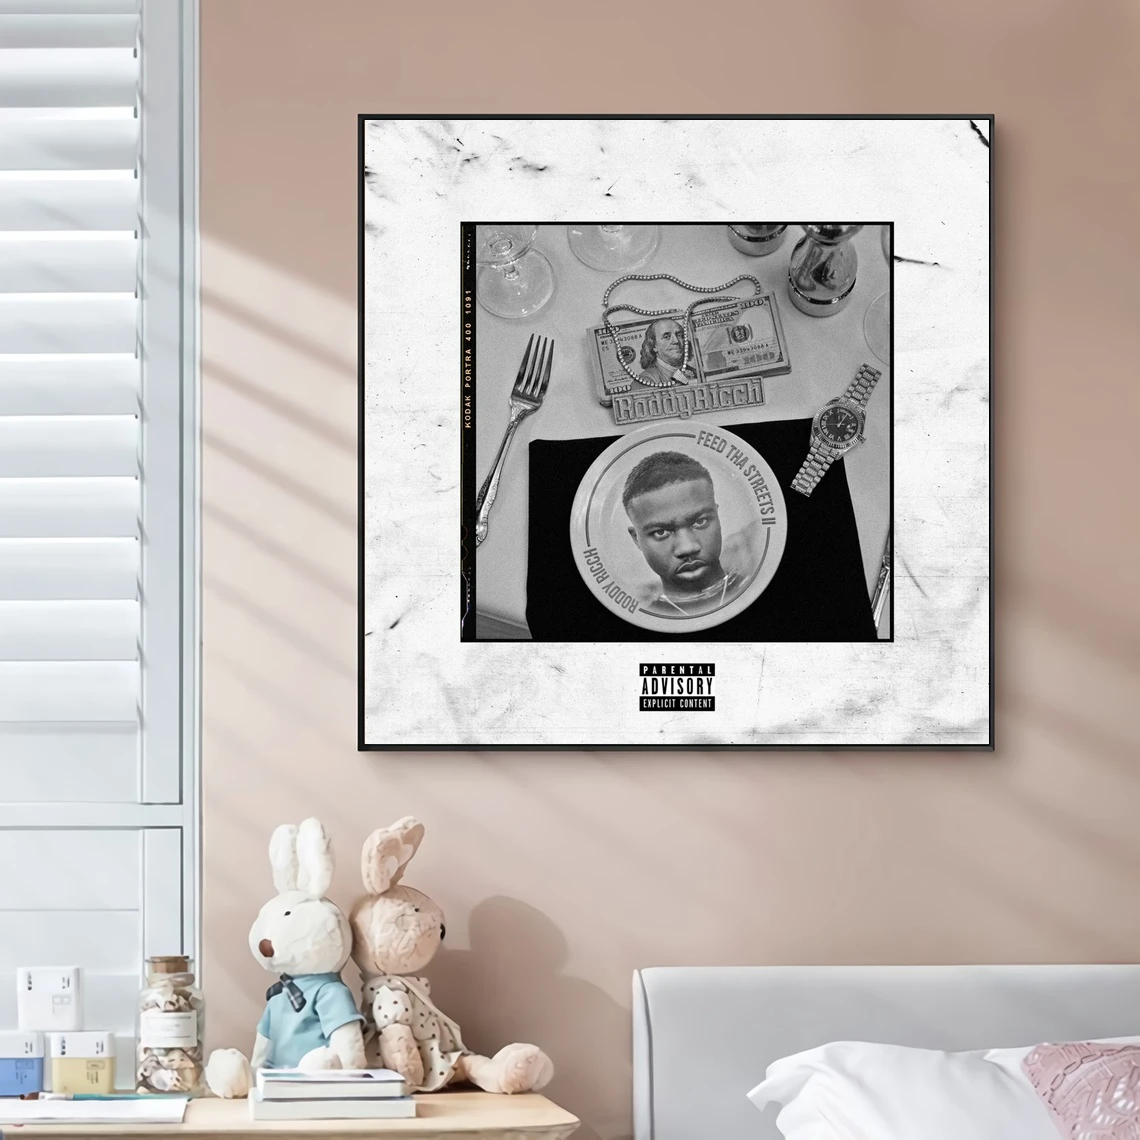 Roddy Ricch Feed Tha Streets II Обложка музыкального альбома, холст, плакат, хип-хоп Рэпер, поп-музыка, Настенная живопись знаменитостей, Художественное оформление